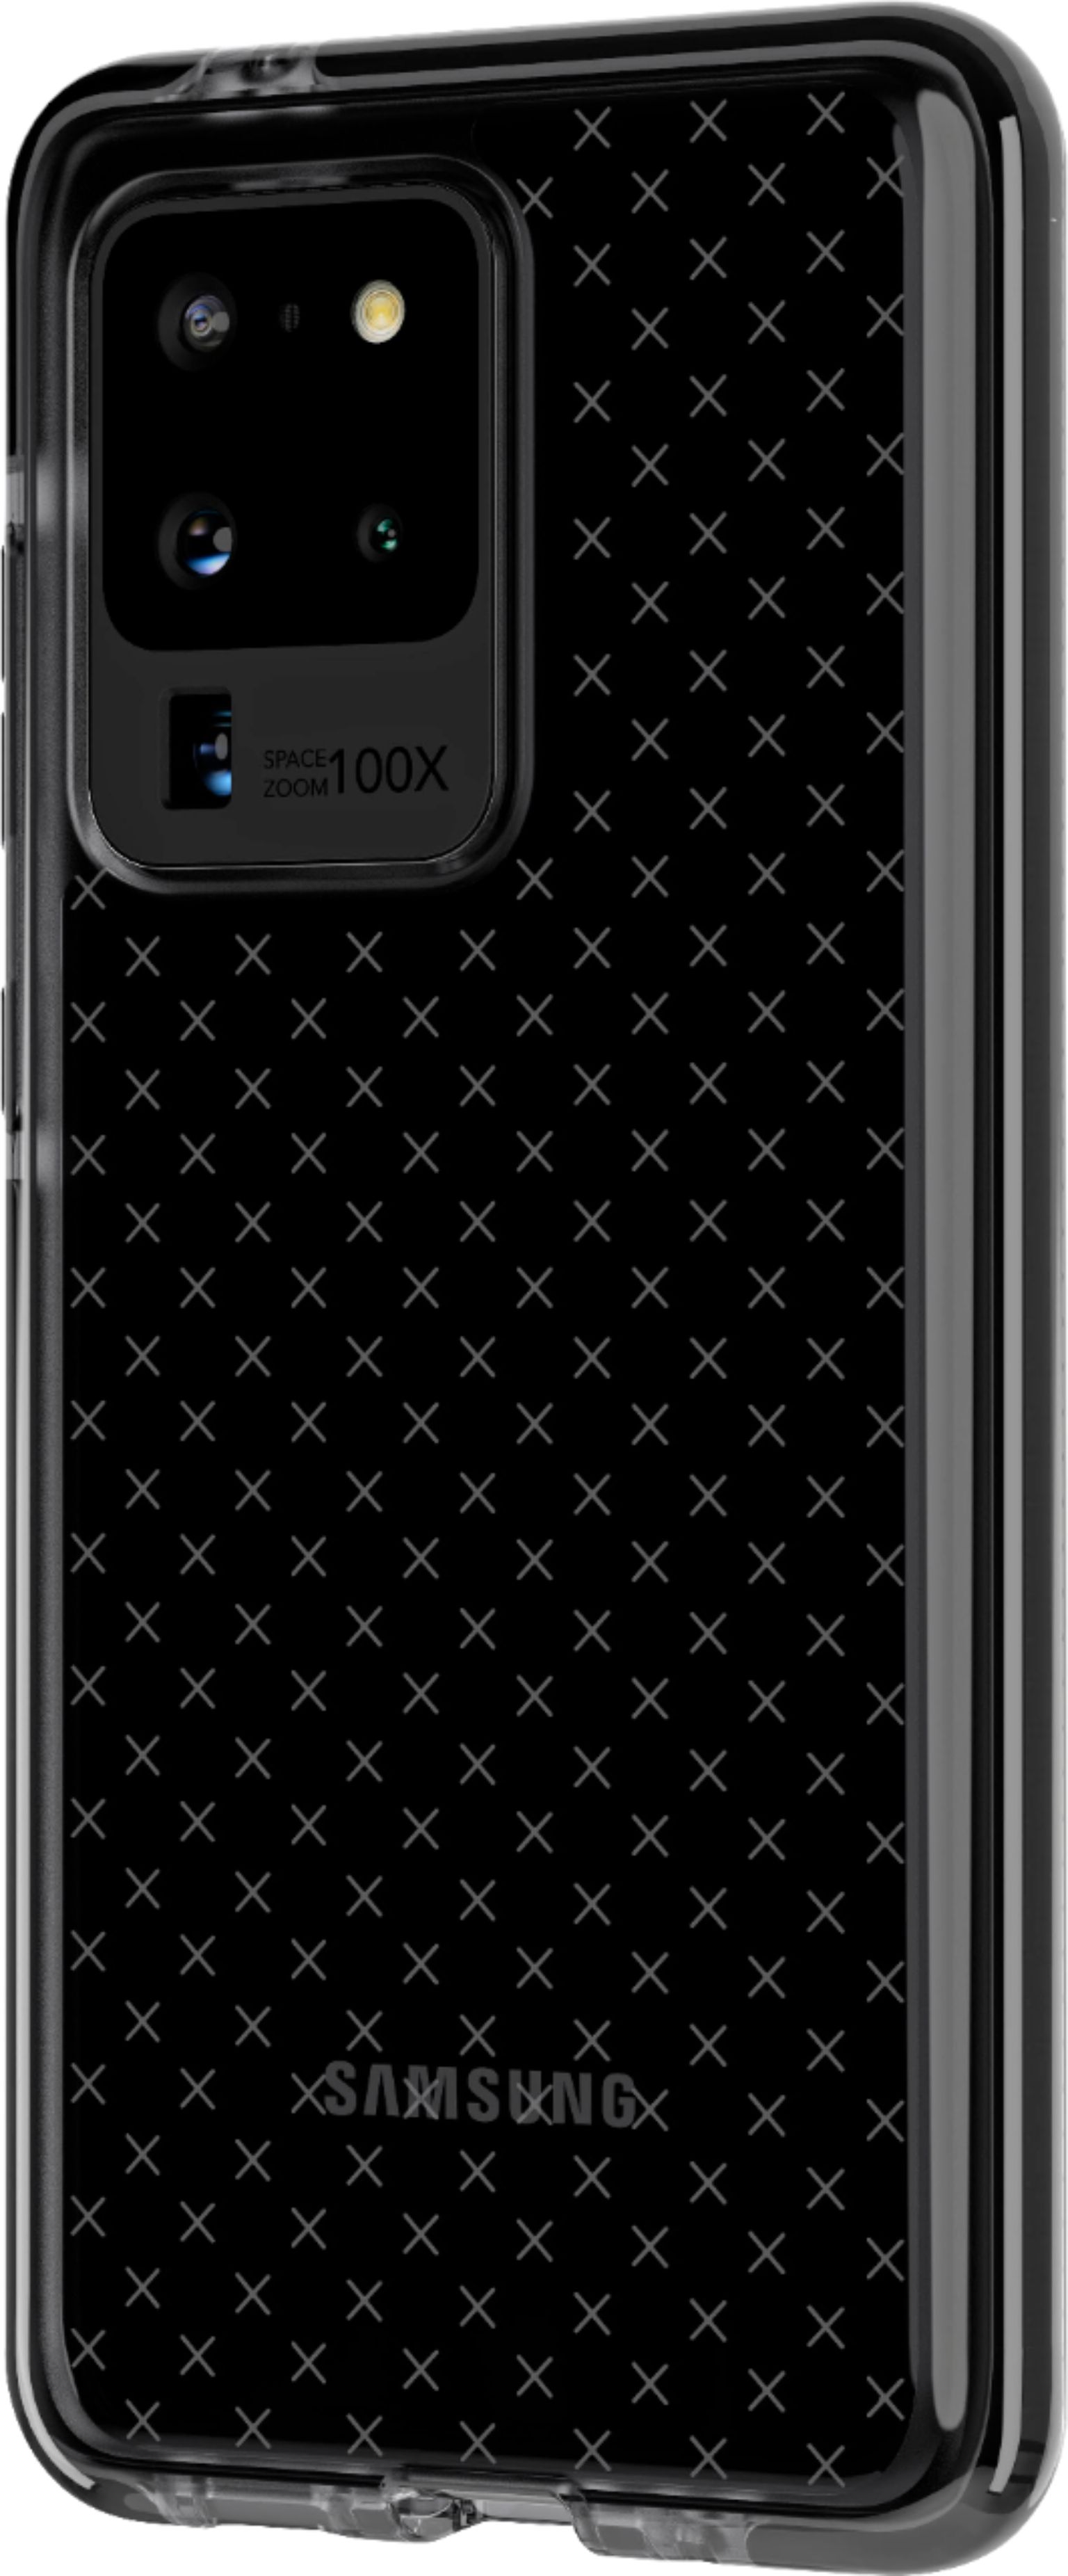 Evo Check - Revvl V+ 5G Case - Smokey Black